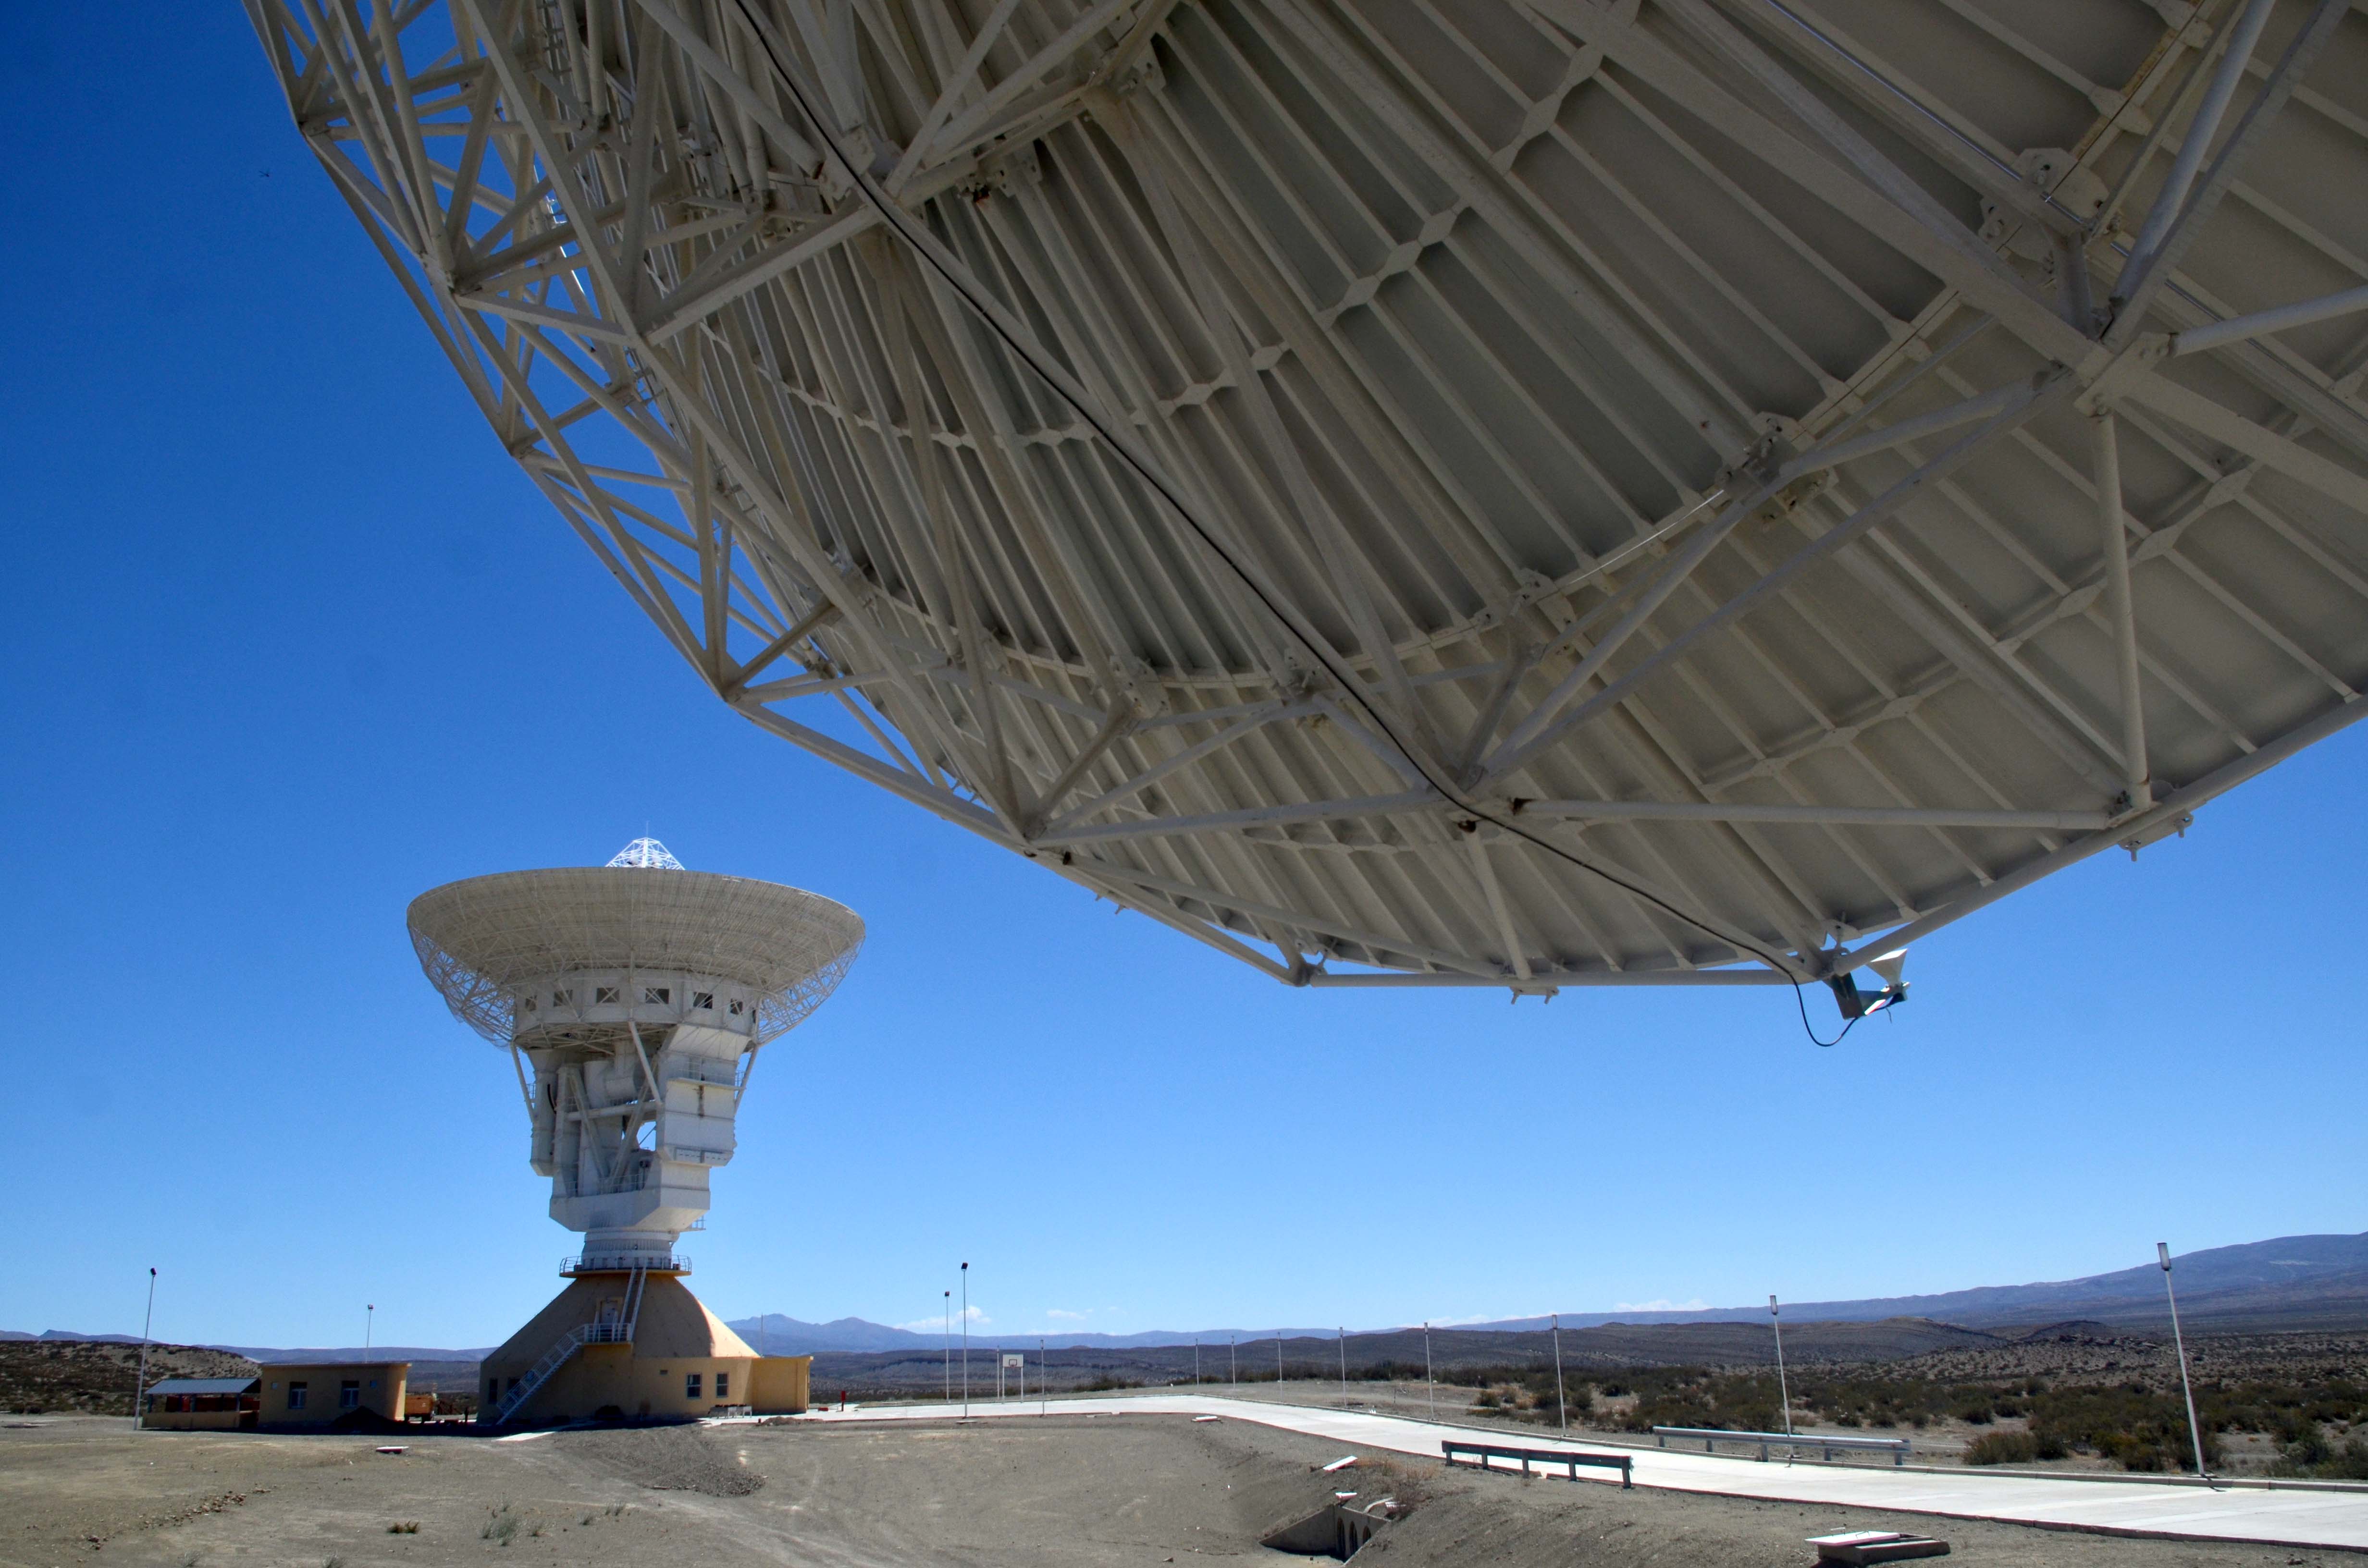 La antena principal tiene unos 35 metros de diámetro. Foto: archivo Matías Subat